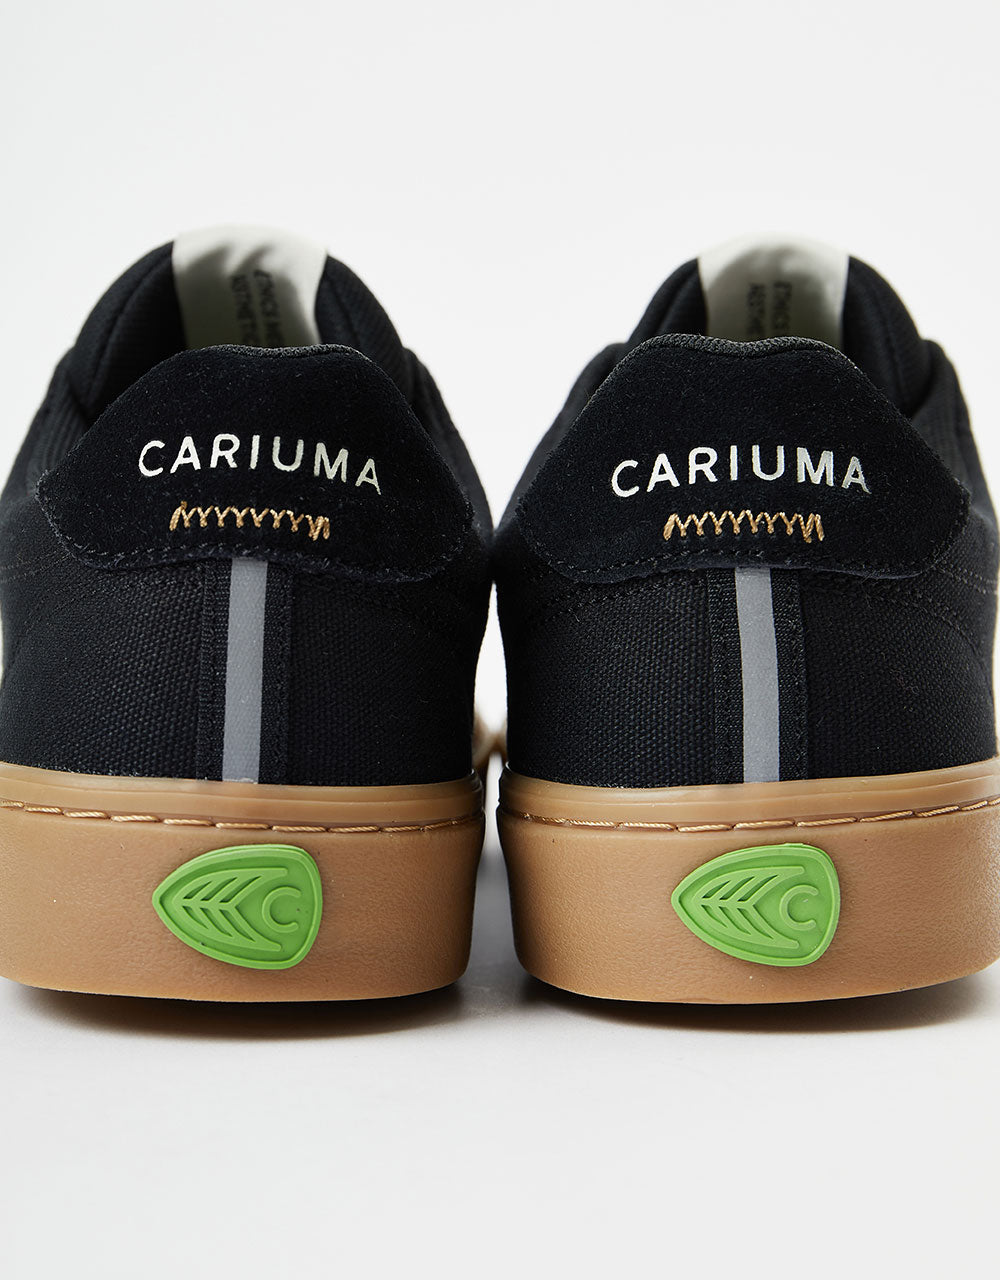 Cariuma Naioca Skate Shoes - Black/Gum/Ivory